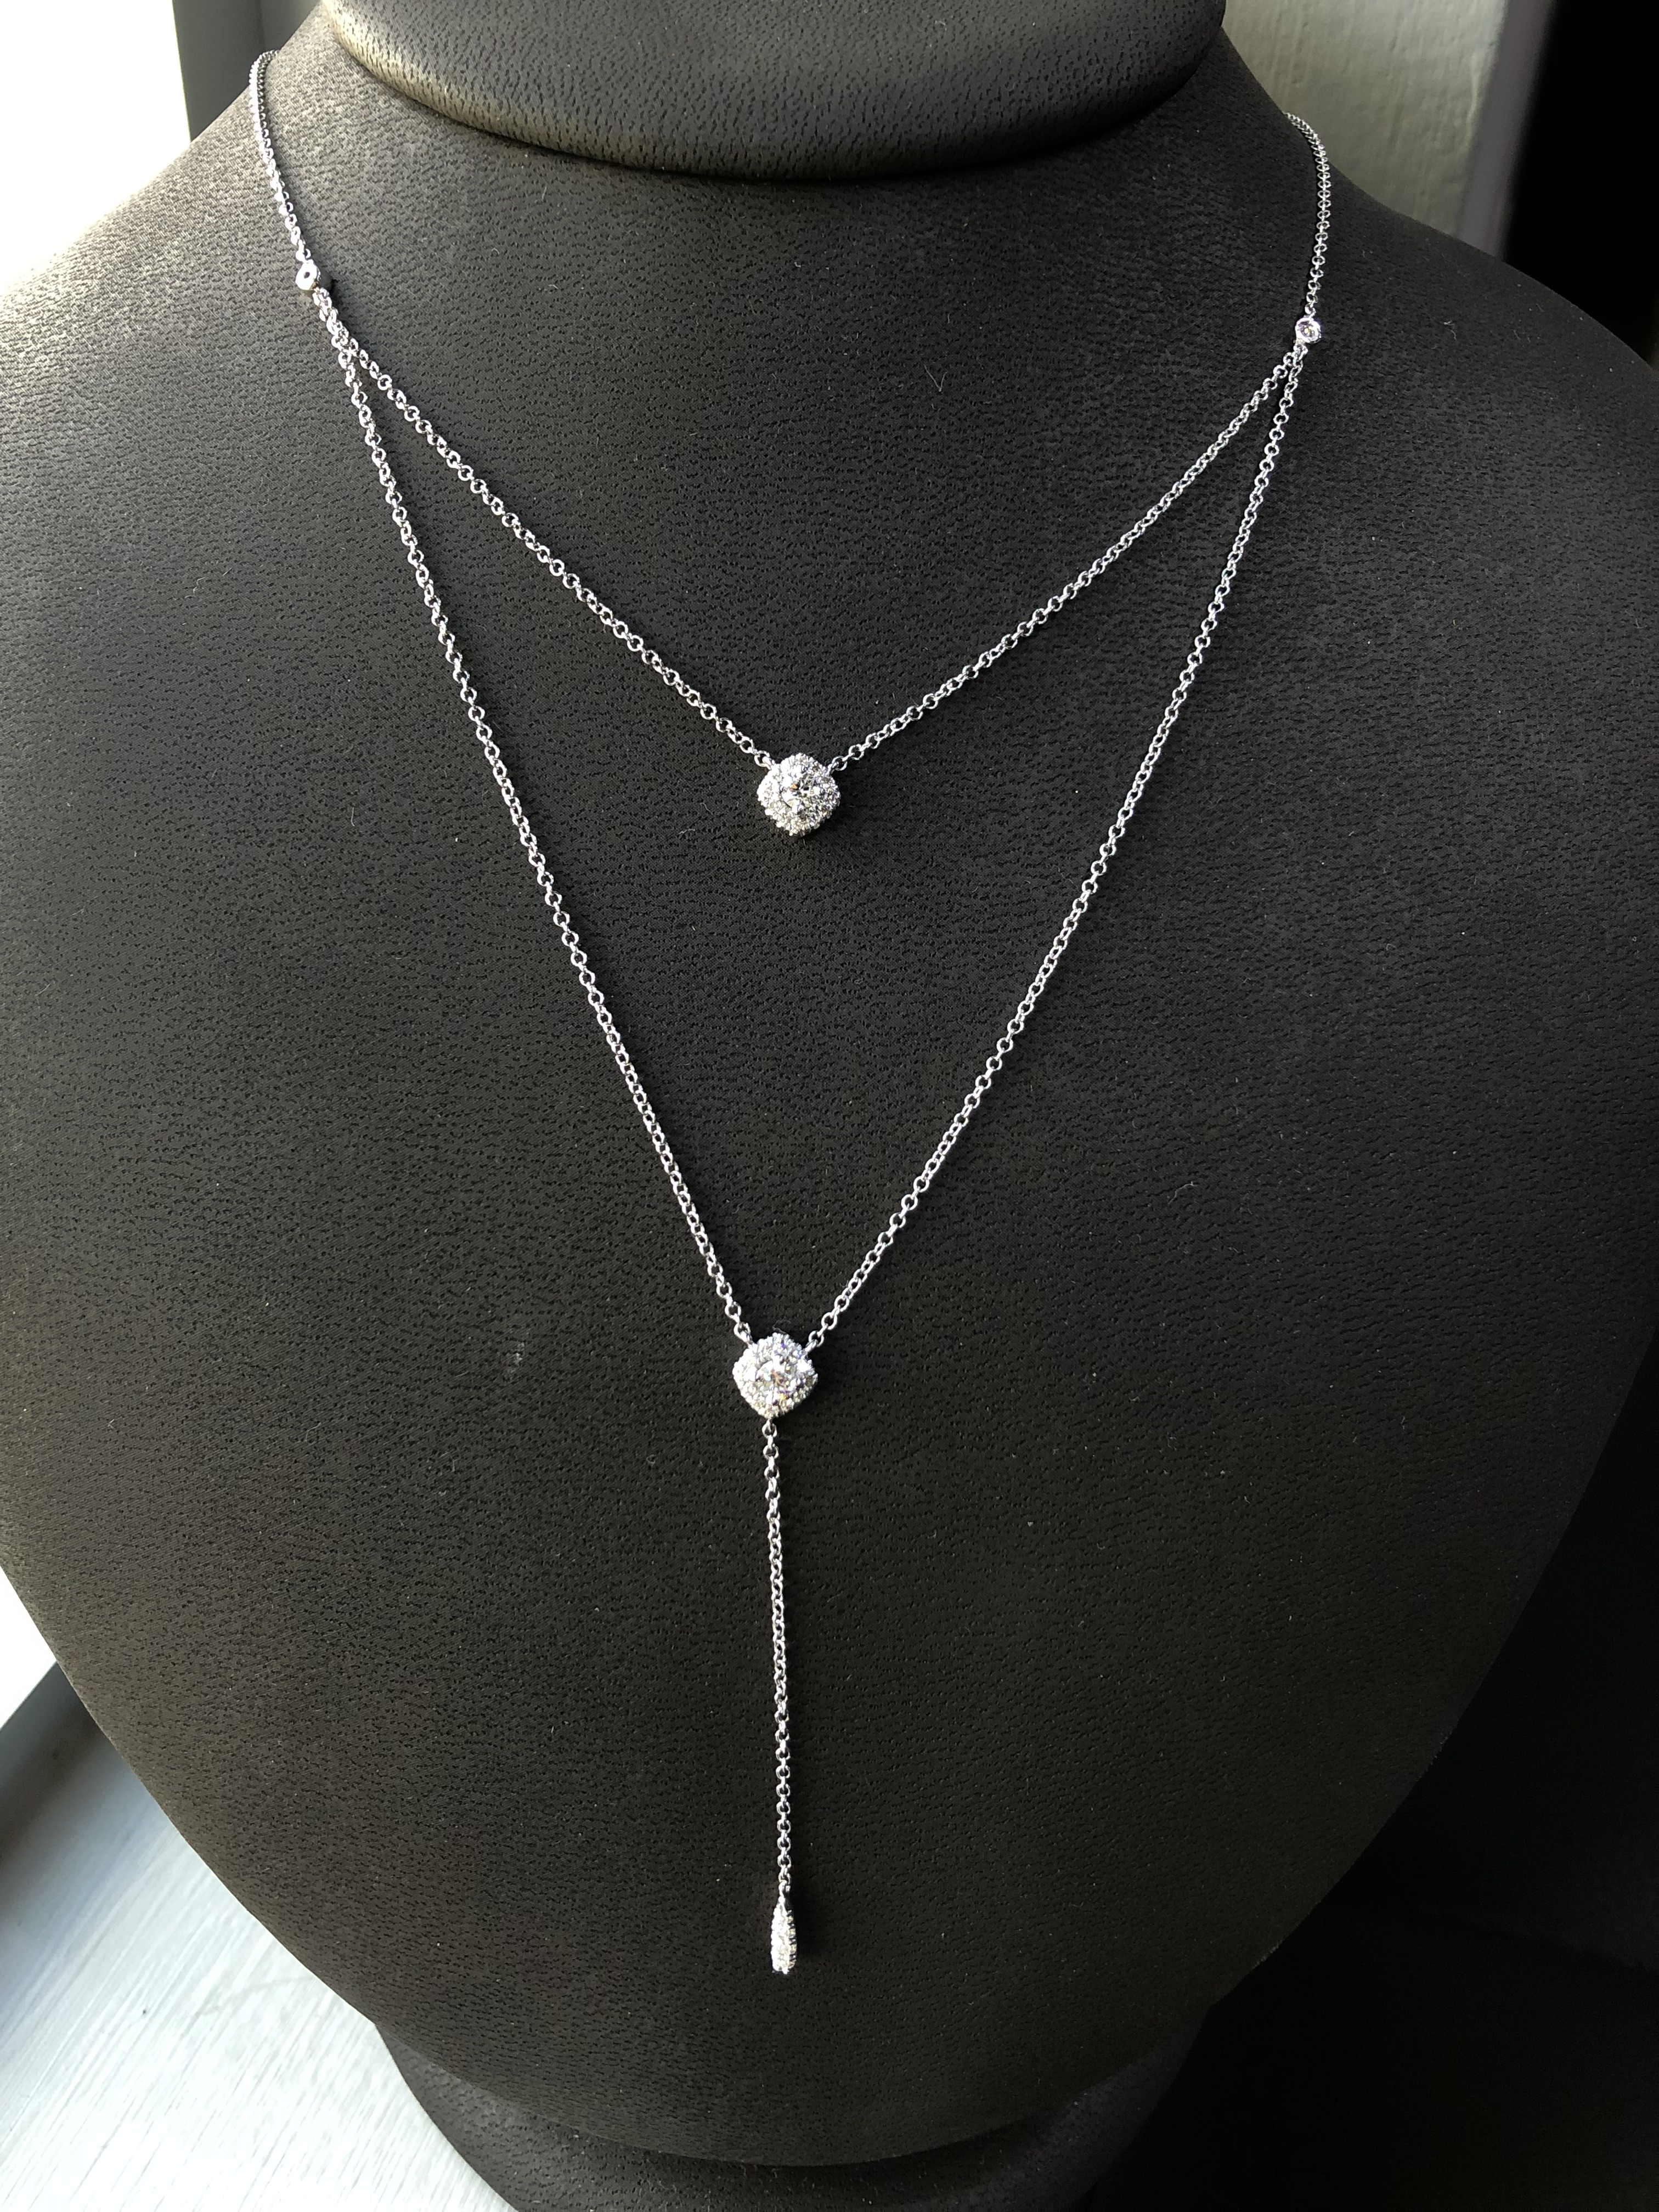 wedding jewelry necklace diamond